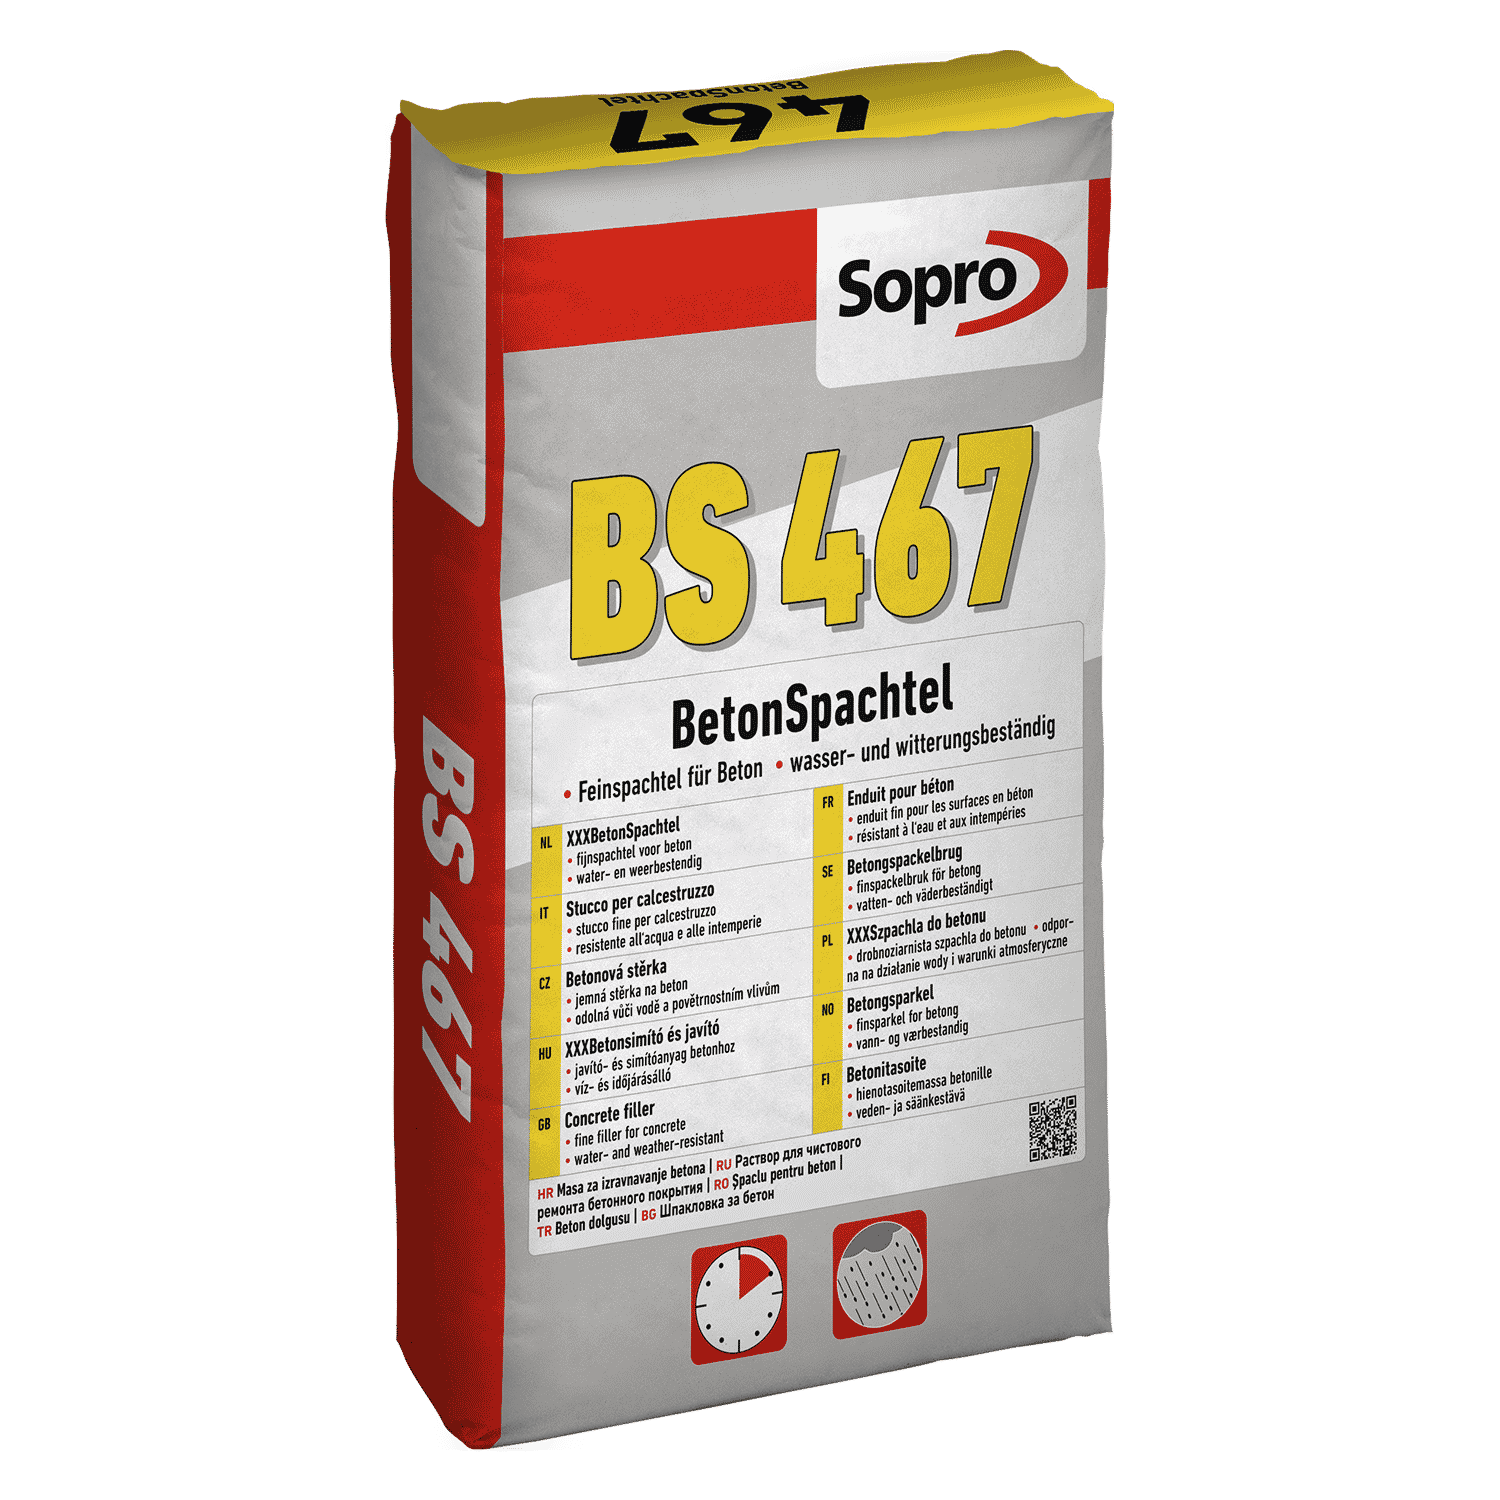 Sopro BS 467 – CT Mineral Skim Coat